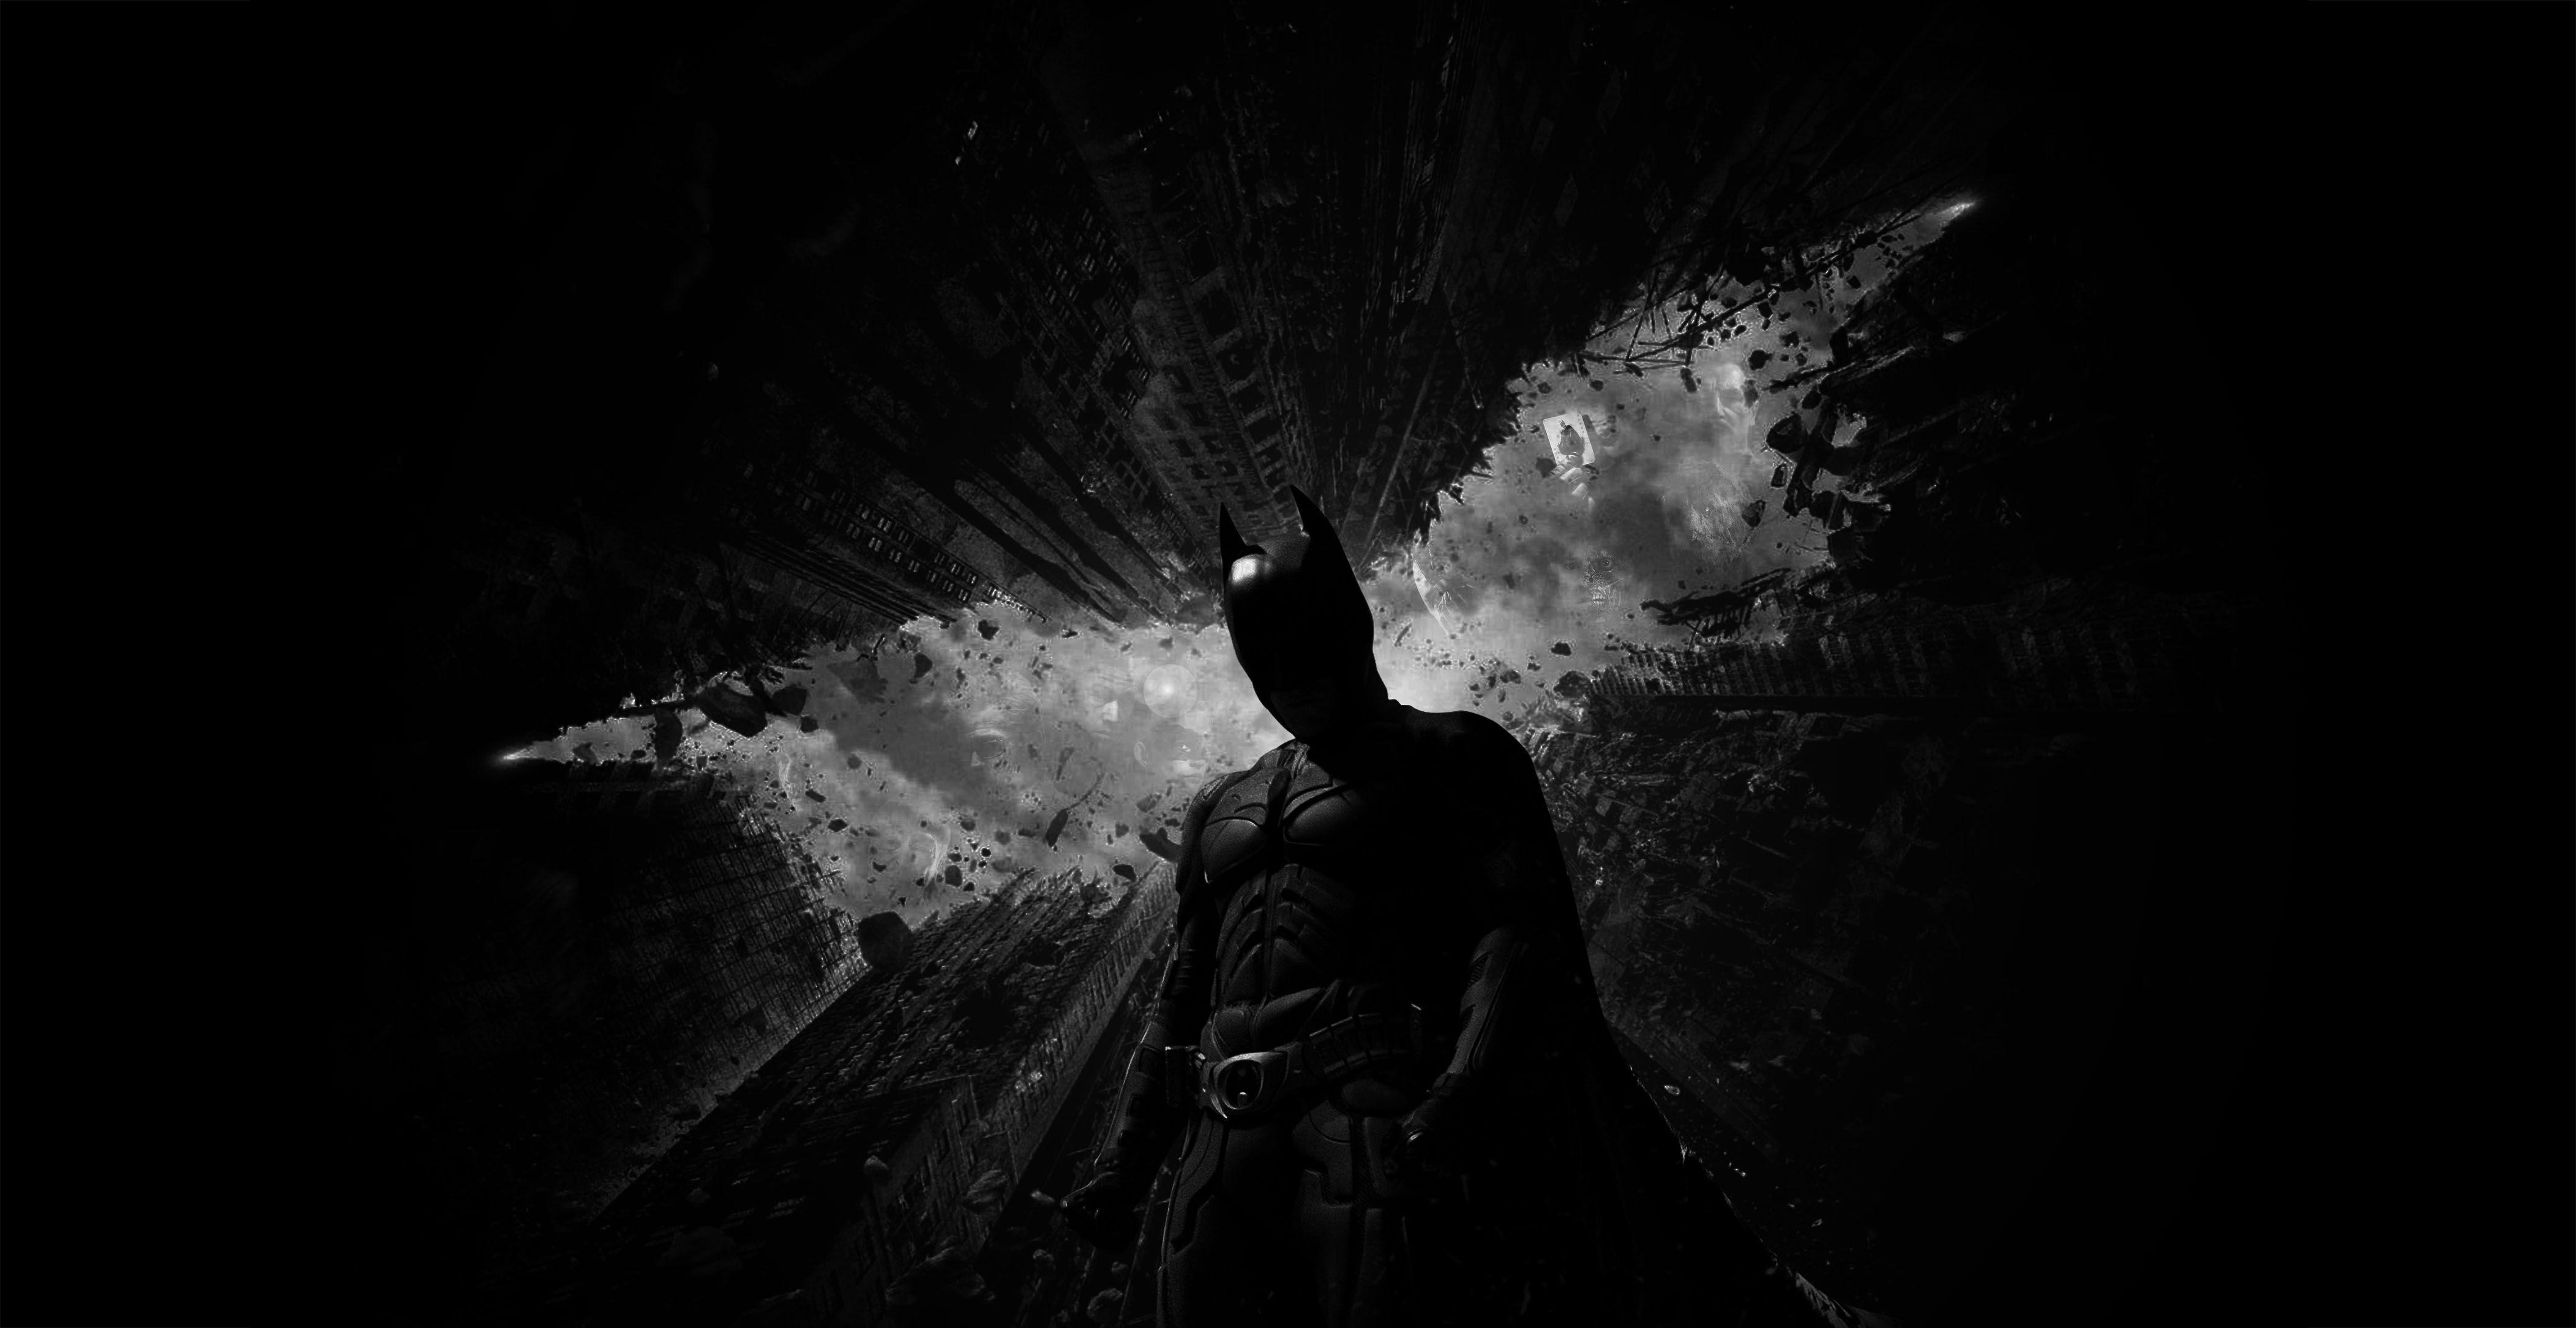 batman the dark knight wallpaper 3d